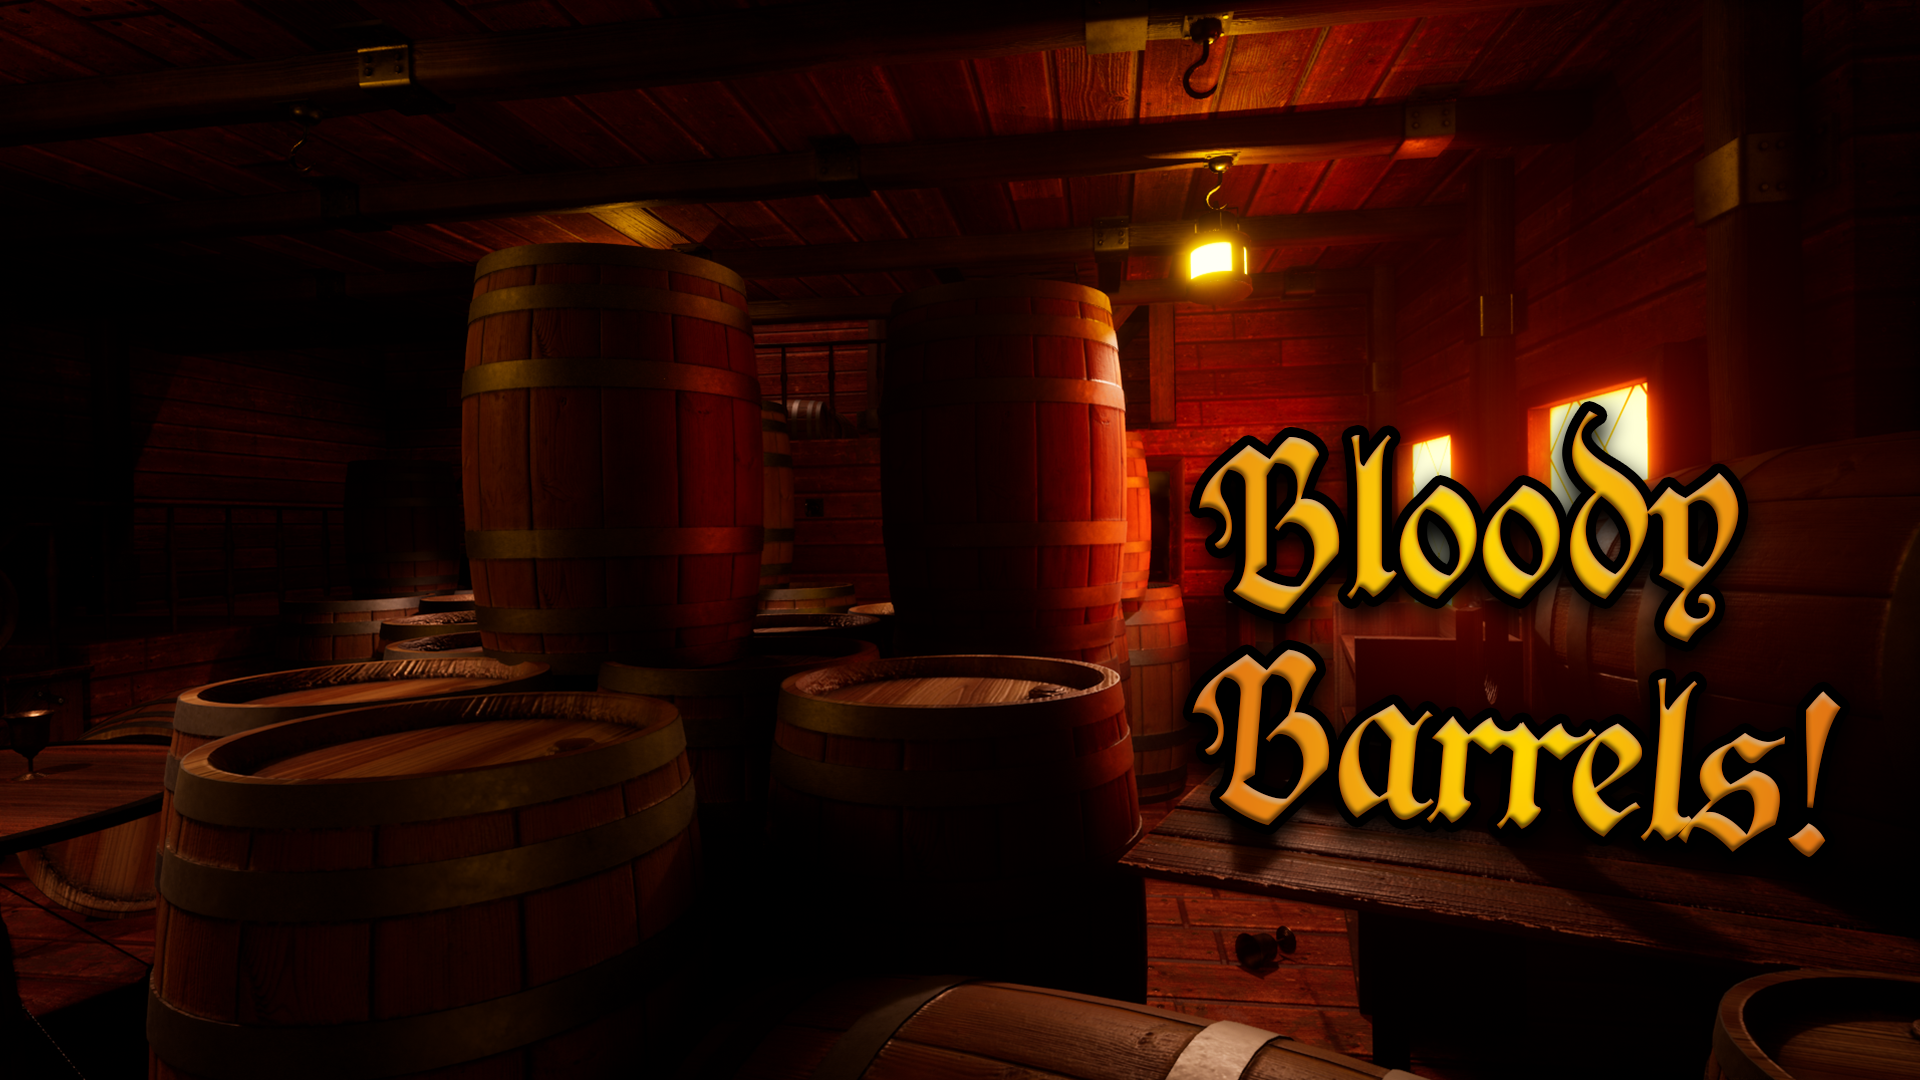 Bloody Barrels!